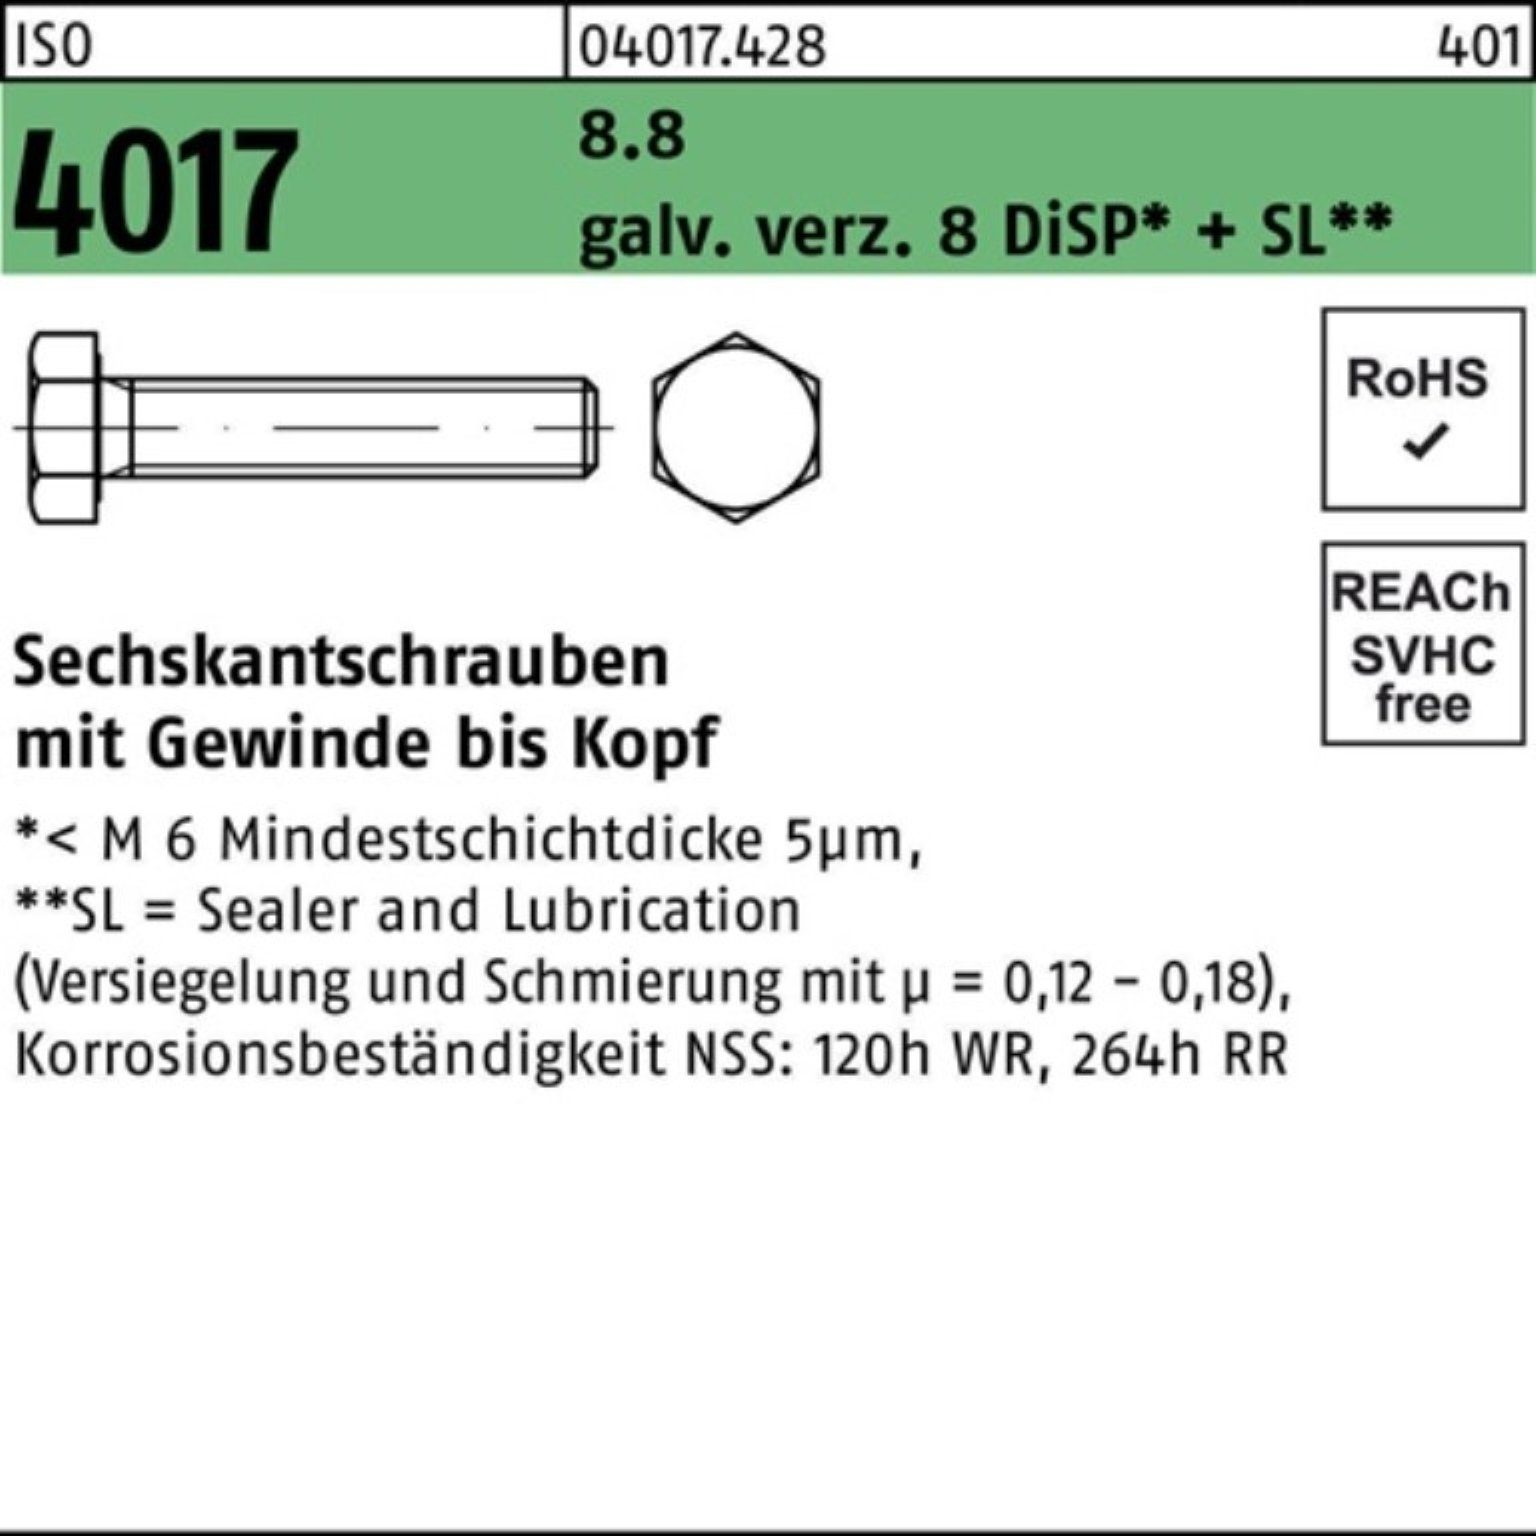 100er ISO Sechskantschraube M10x galv.verz. Sechskantschraube DiSP VG 8.8 80 Bufab Pack 4017 8